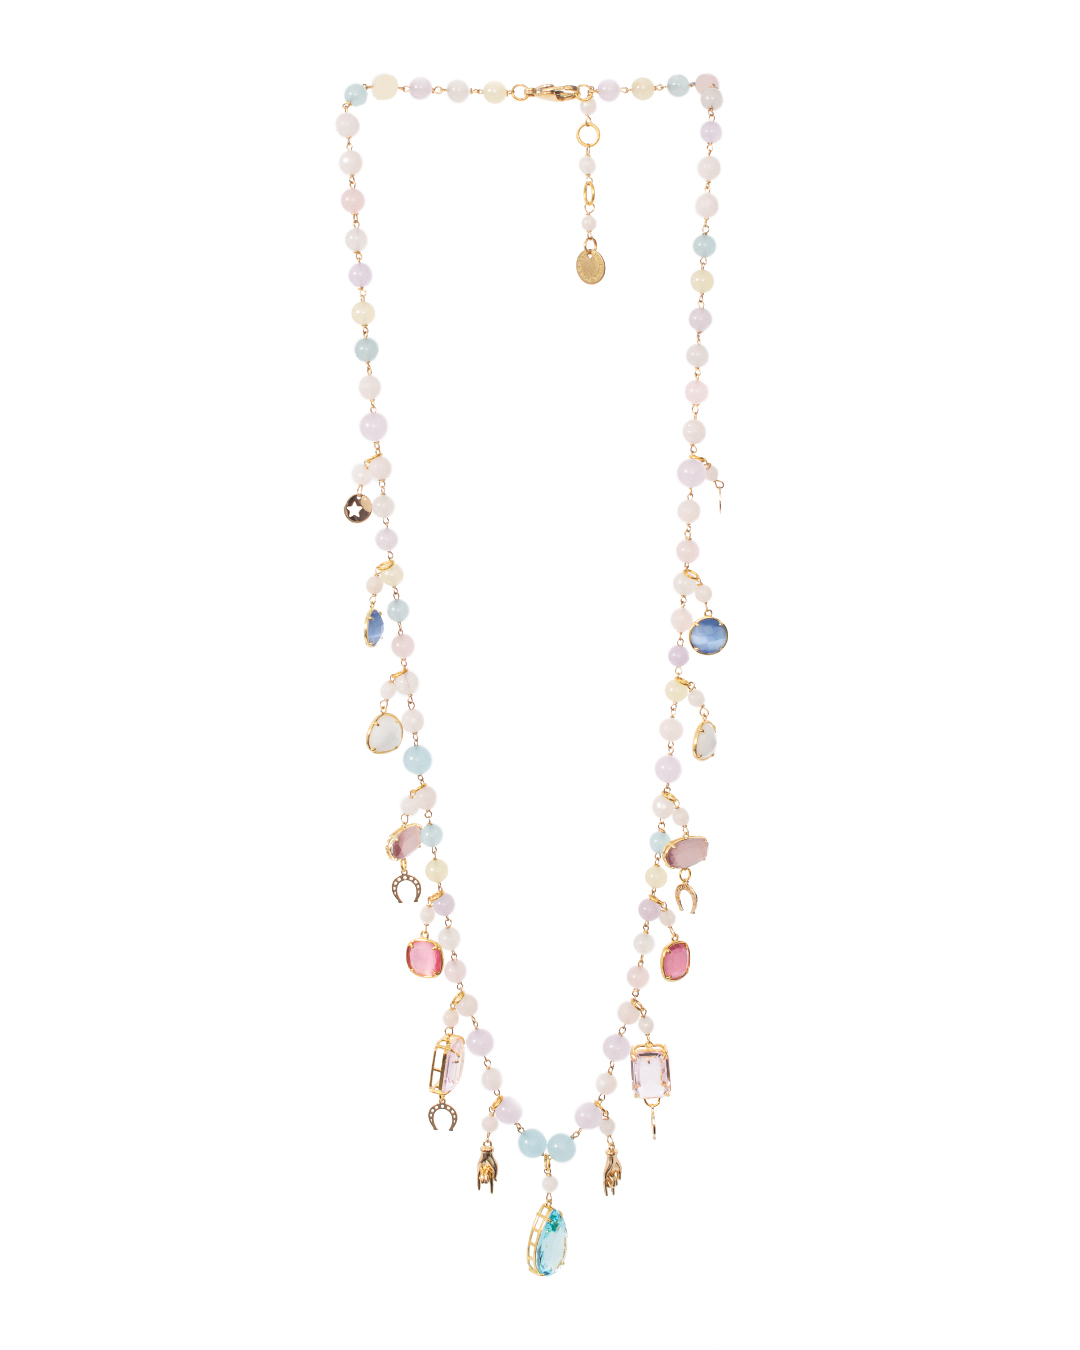 ожерелье Marina Fossati ILLYPILLI LUNGA5 голубой+розовый+золотой UNI, размер UNI, цвет голубой+розовый+золотой